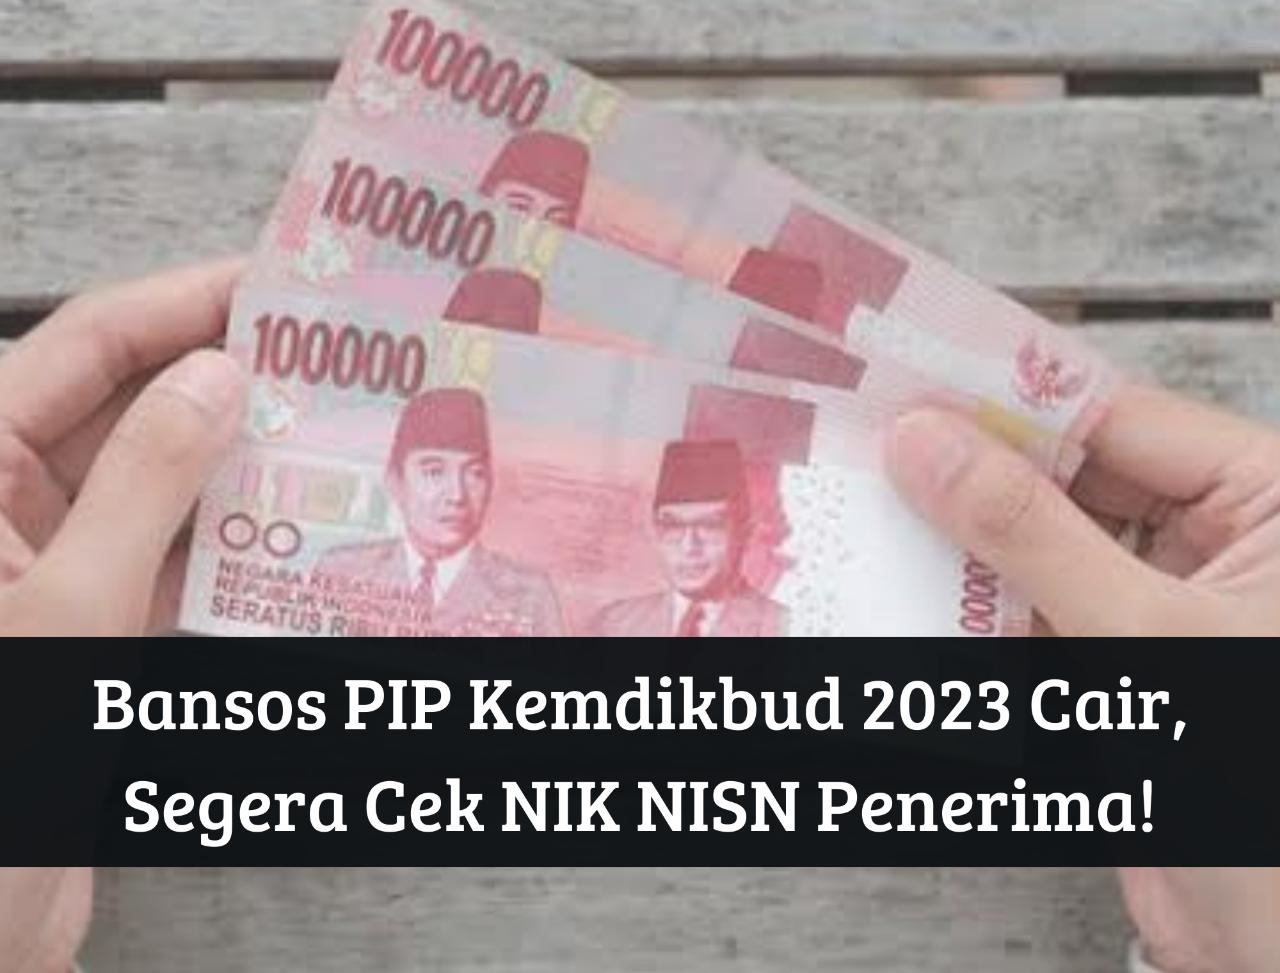 Full Senyum! Cek NIK NISN Penerima, Bansos PIP Kemdikbud 2023 Cair, Segera Login pip.kemdikbud.go.id